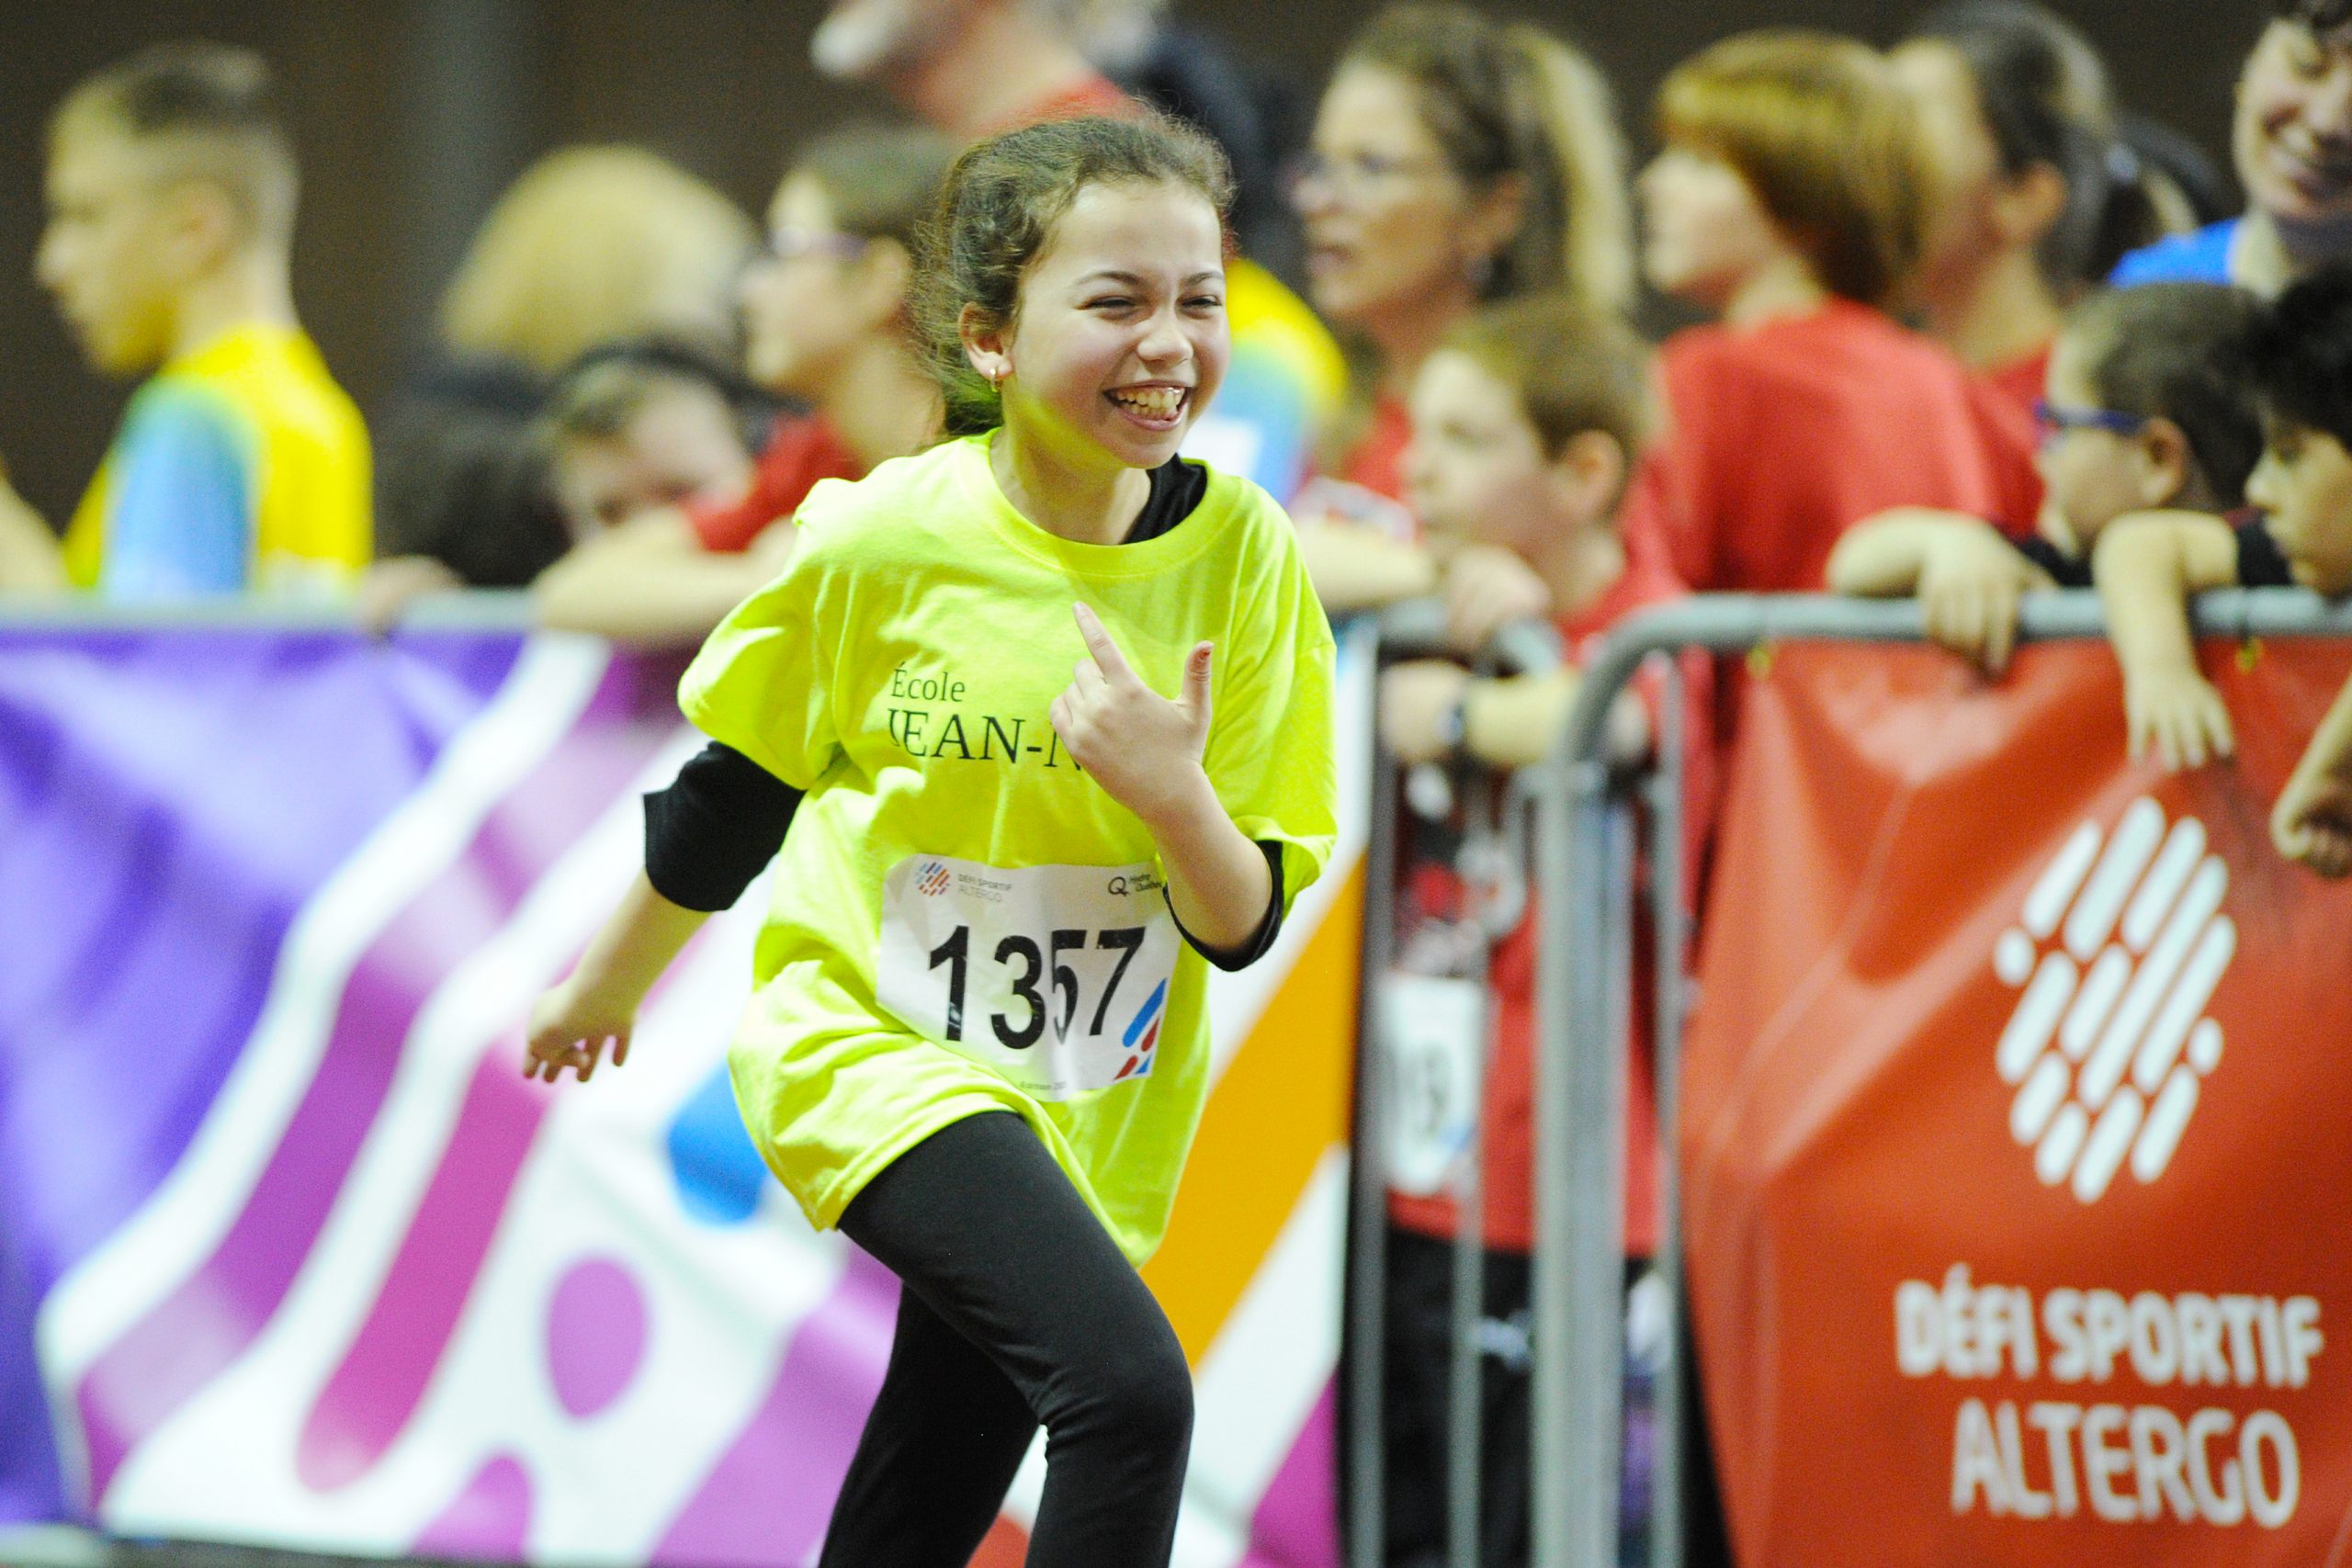 Une jeune fille qui participe au volet scolaire du Défi sportif AlterGo fait une épreuve d'athlétisme avec un grand sourire.